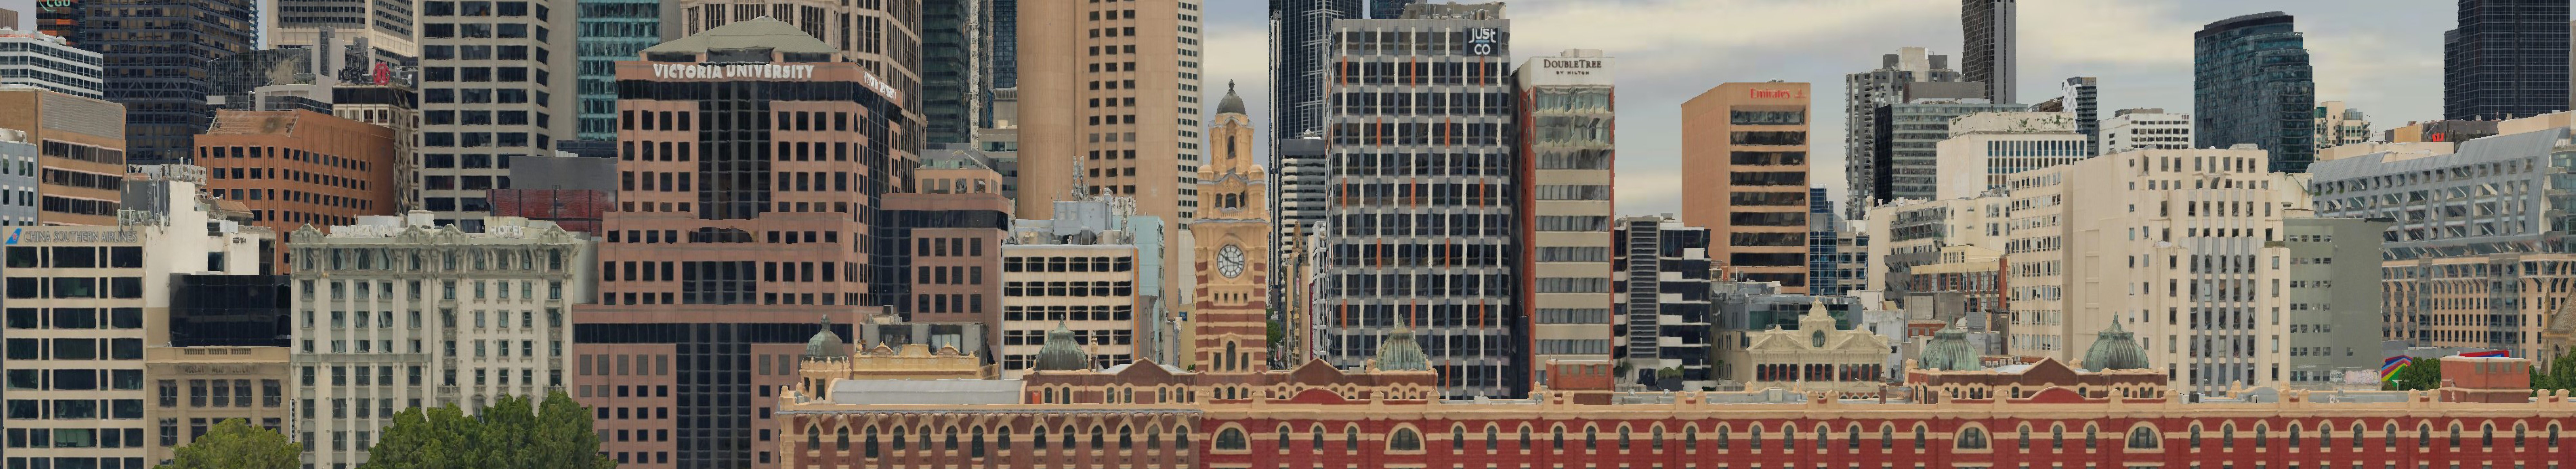 Melbourne_High_Res_2cm_MetroMap_2021.jpg